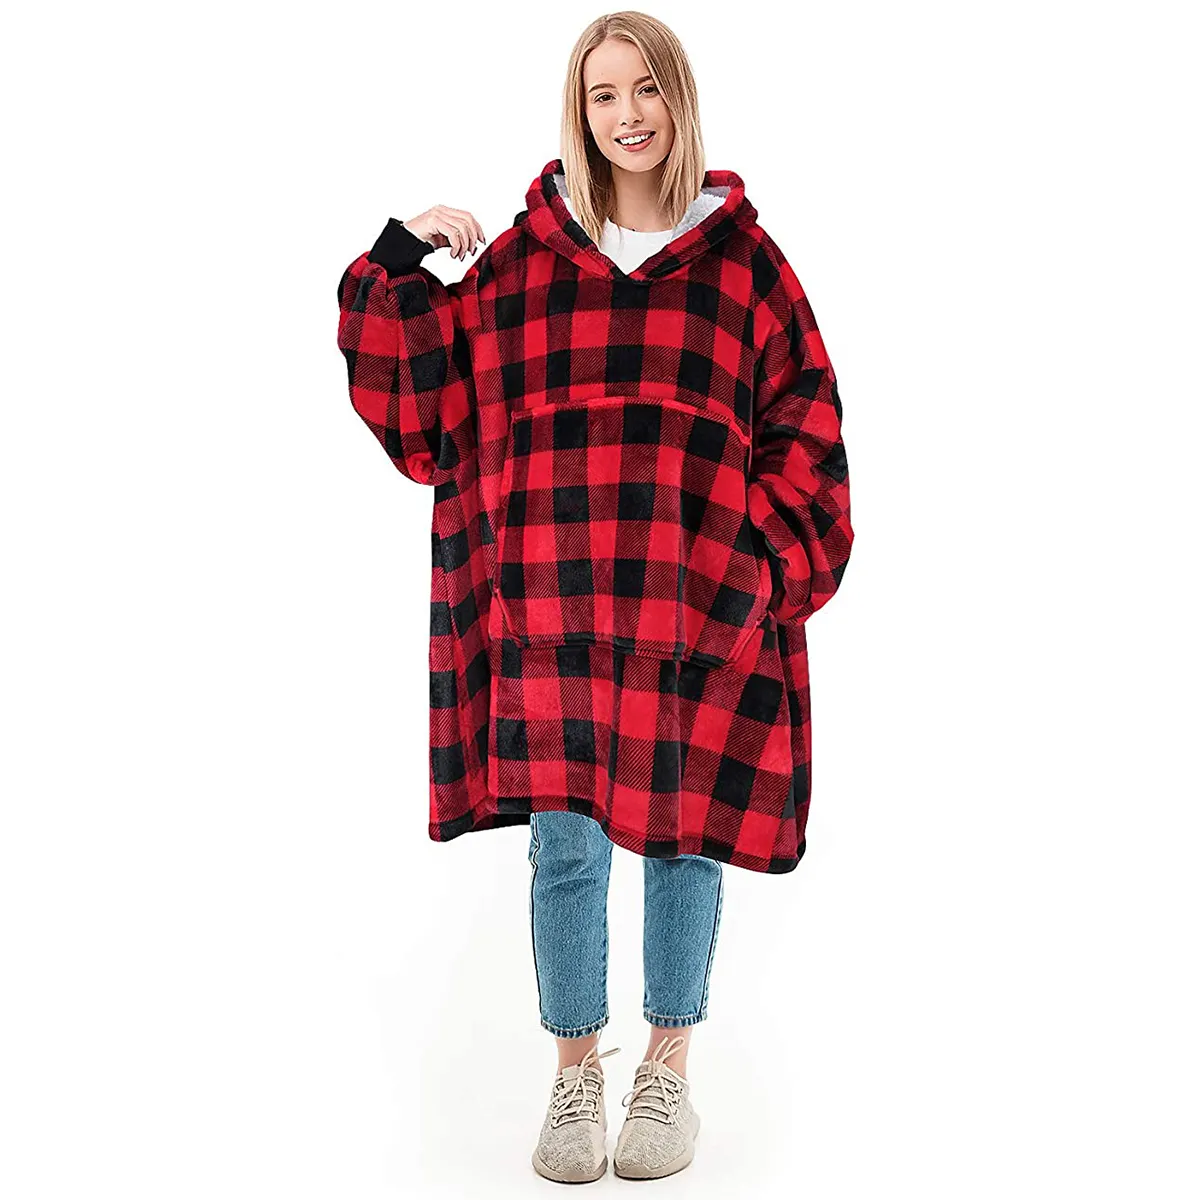 Cozy Wearable Oversized Plaid Sherpa TV Plush Hooded Blanket hoodie Blanket Sweatshirt with sleeves & pocket